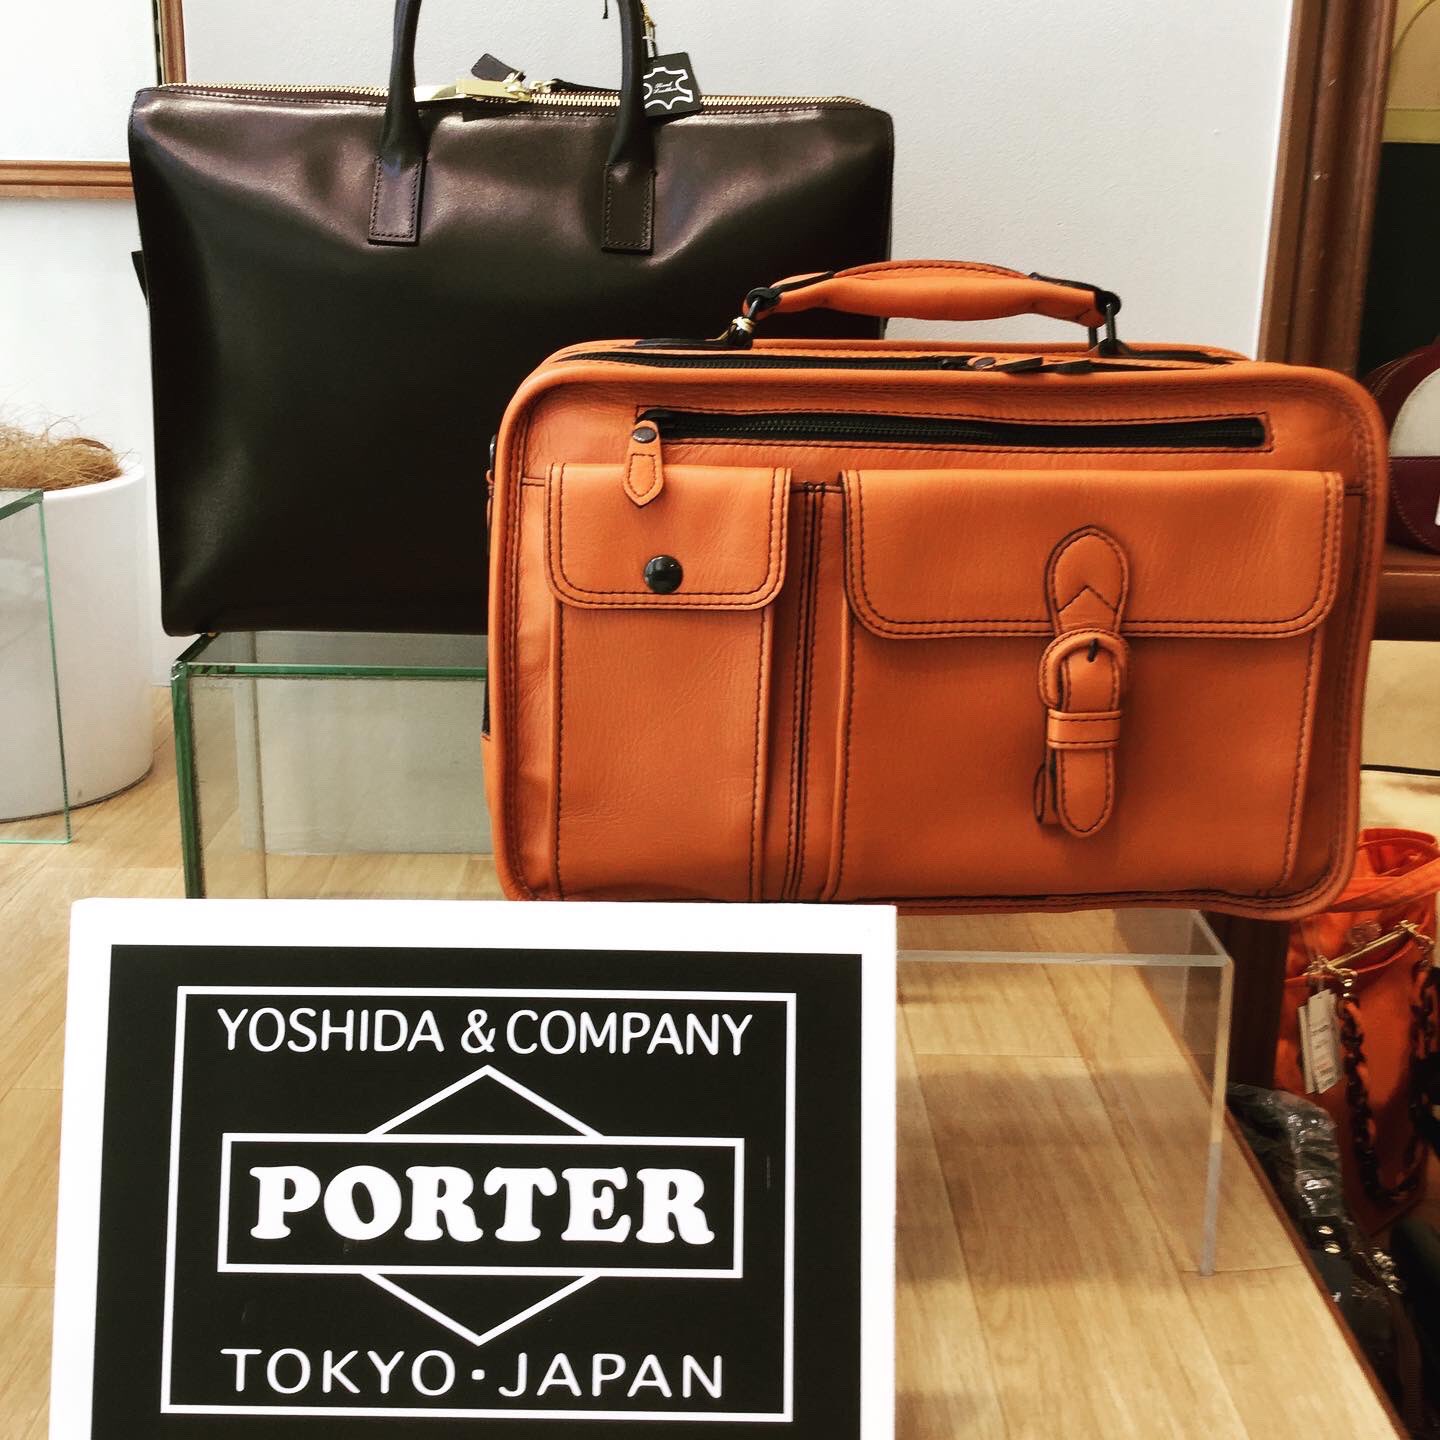 銀座タニザワ【公式】 on Twitter: "日本の鞄製造の両雄、「青木鞄」と「吉田カバン」のコーナーもありますよ。#青木鞄 #吉田カバン…